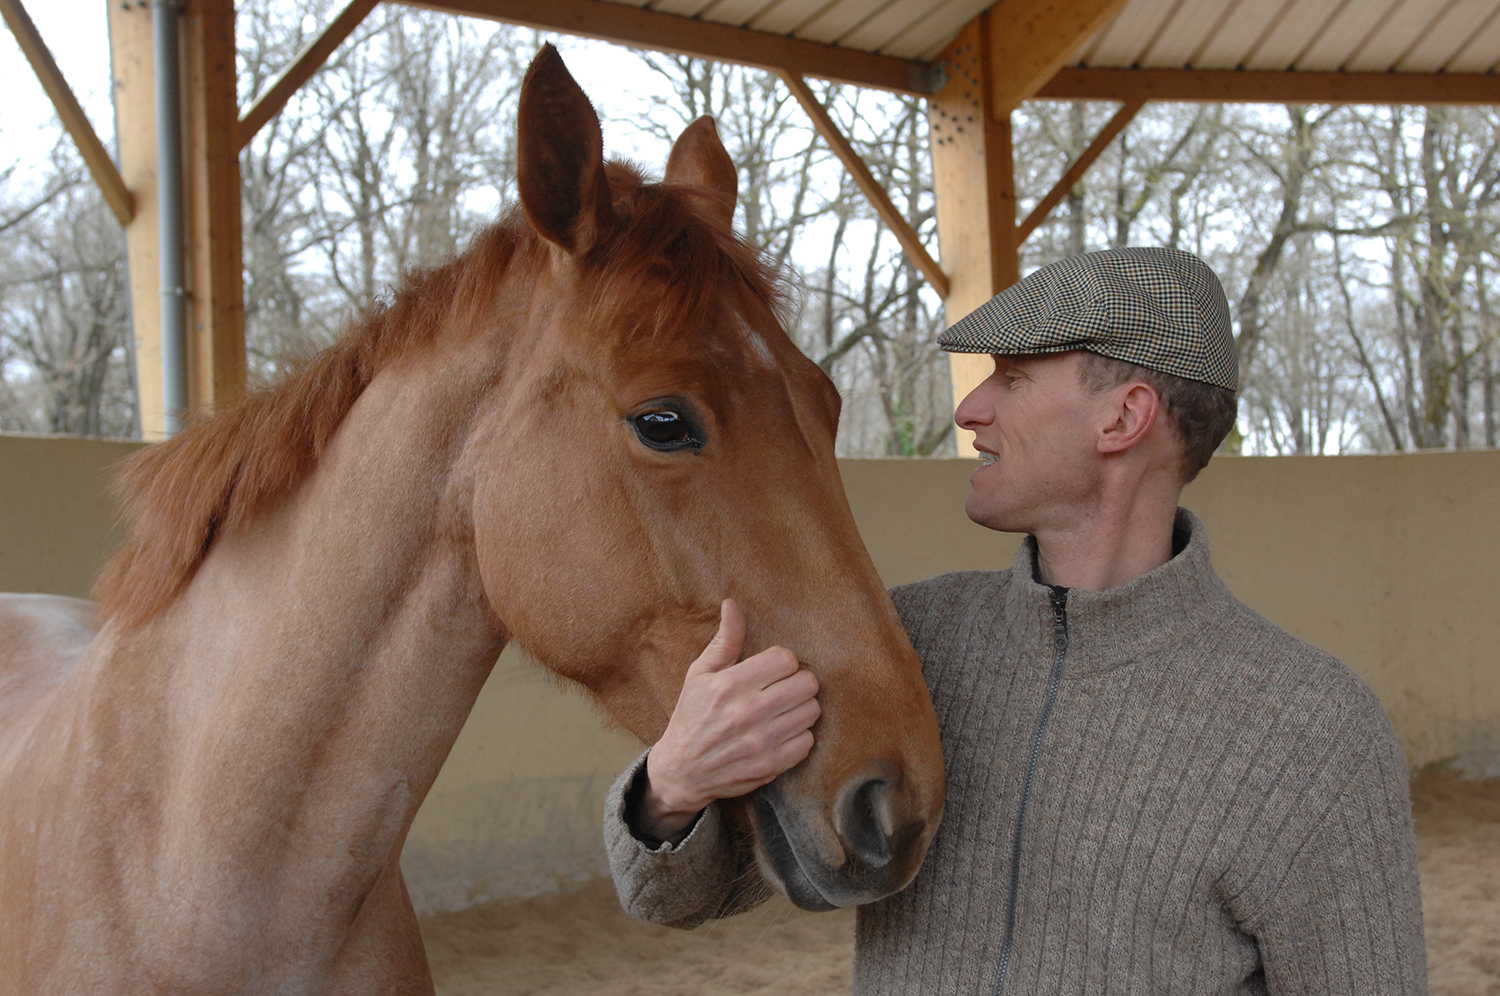 Les nouveaux équipements d'équitation innovants - HorseLab